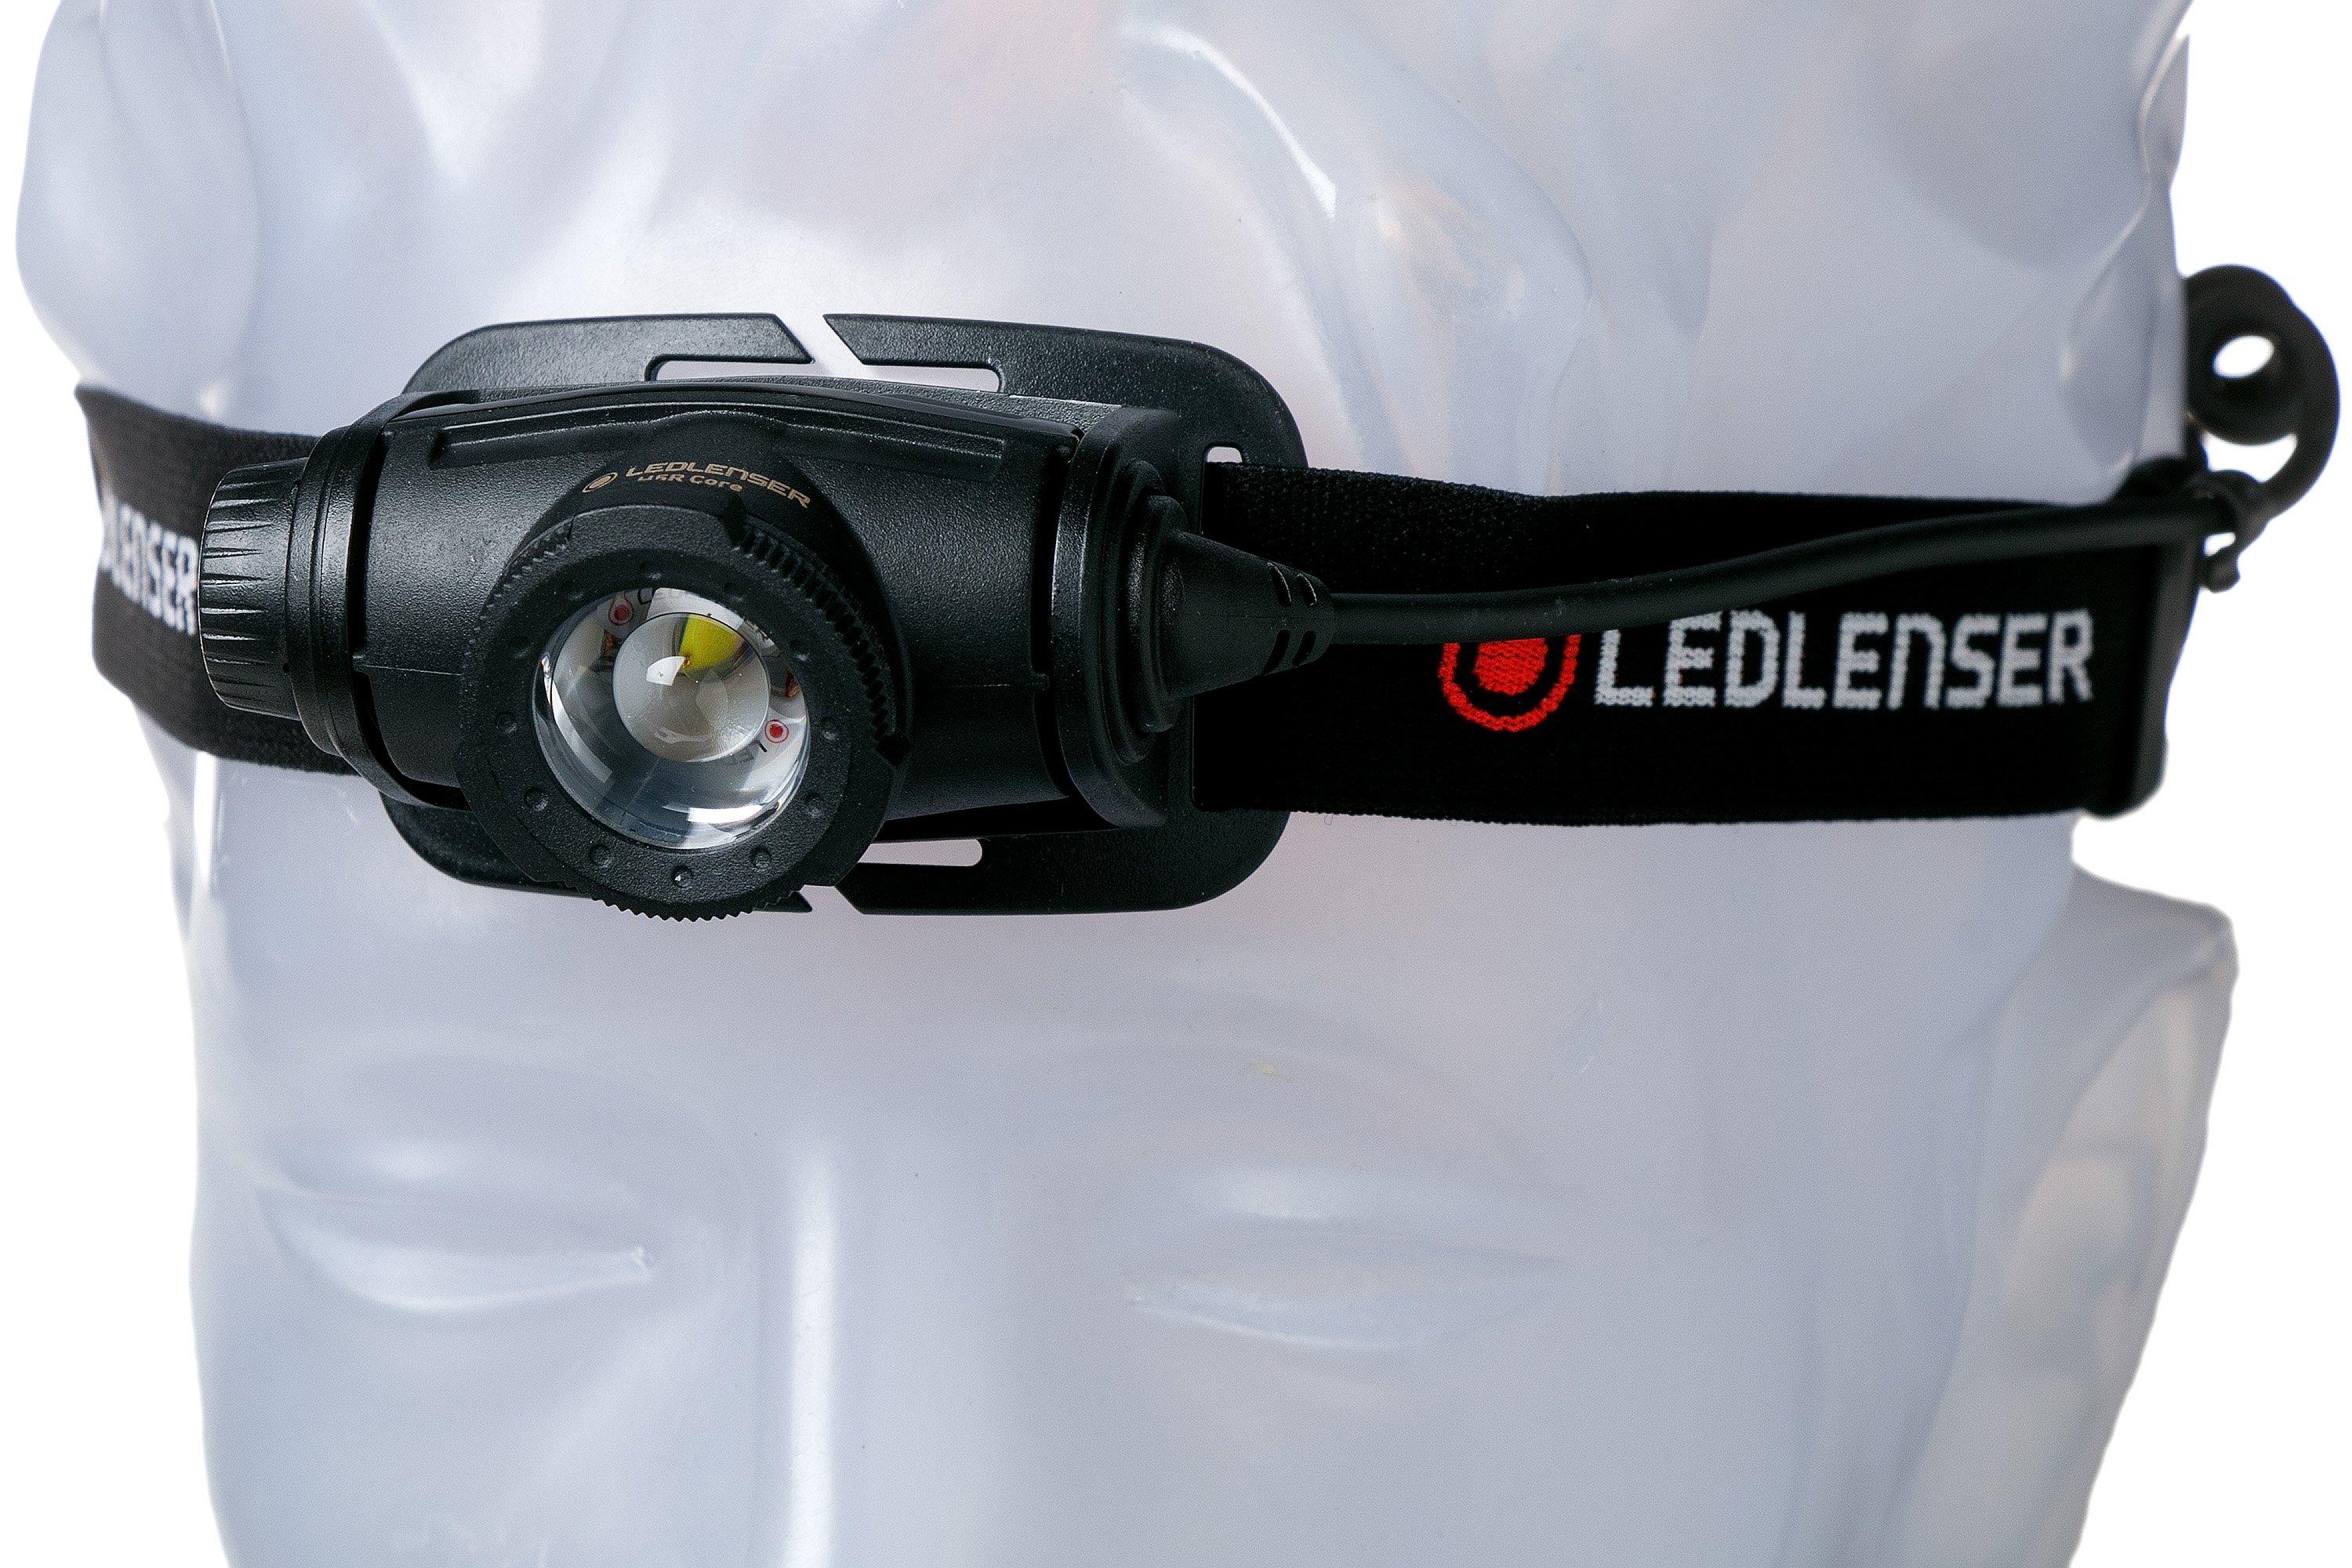 Lampe frontale 1 LED blanche - LedLenser® H5R Core - Etanche IP67 -  Rechargeable